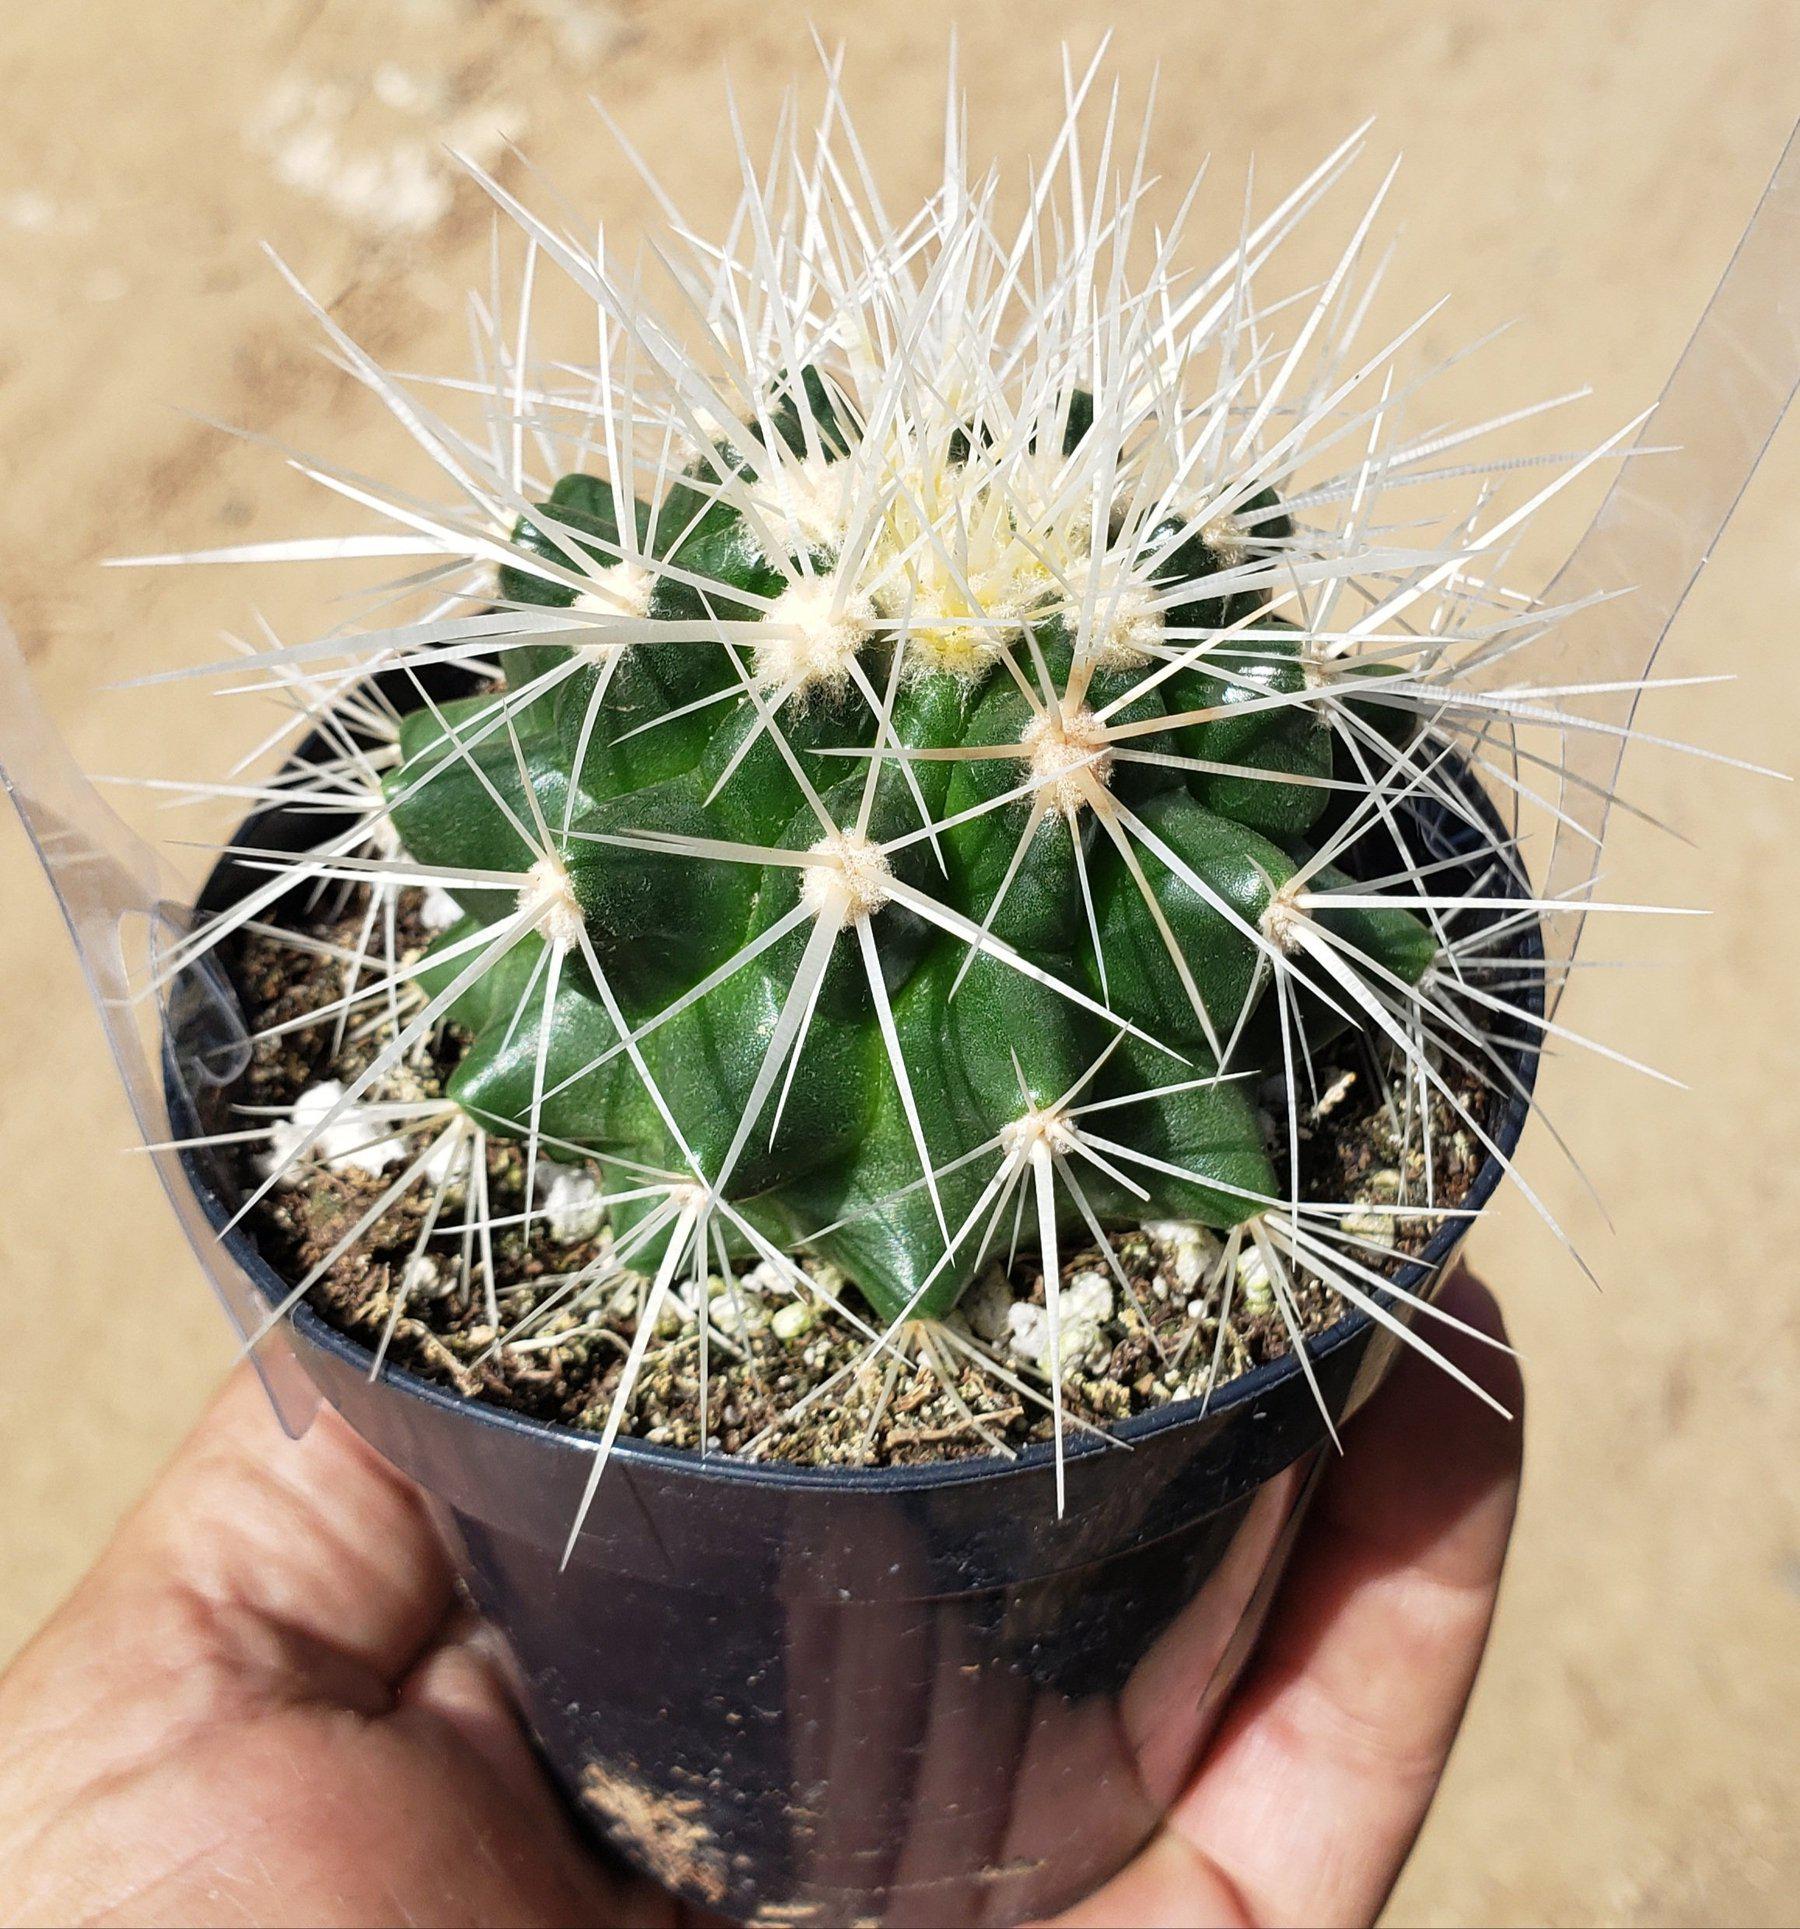 Echinocactus Grusonii Golden Barrel cactus in 8" container-Cactus - Large - Exact-The Succulent Source